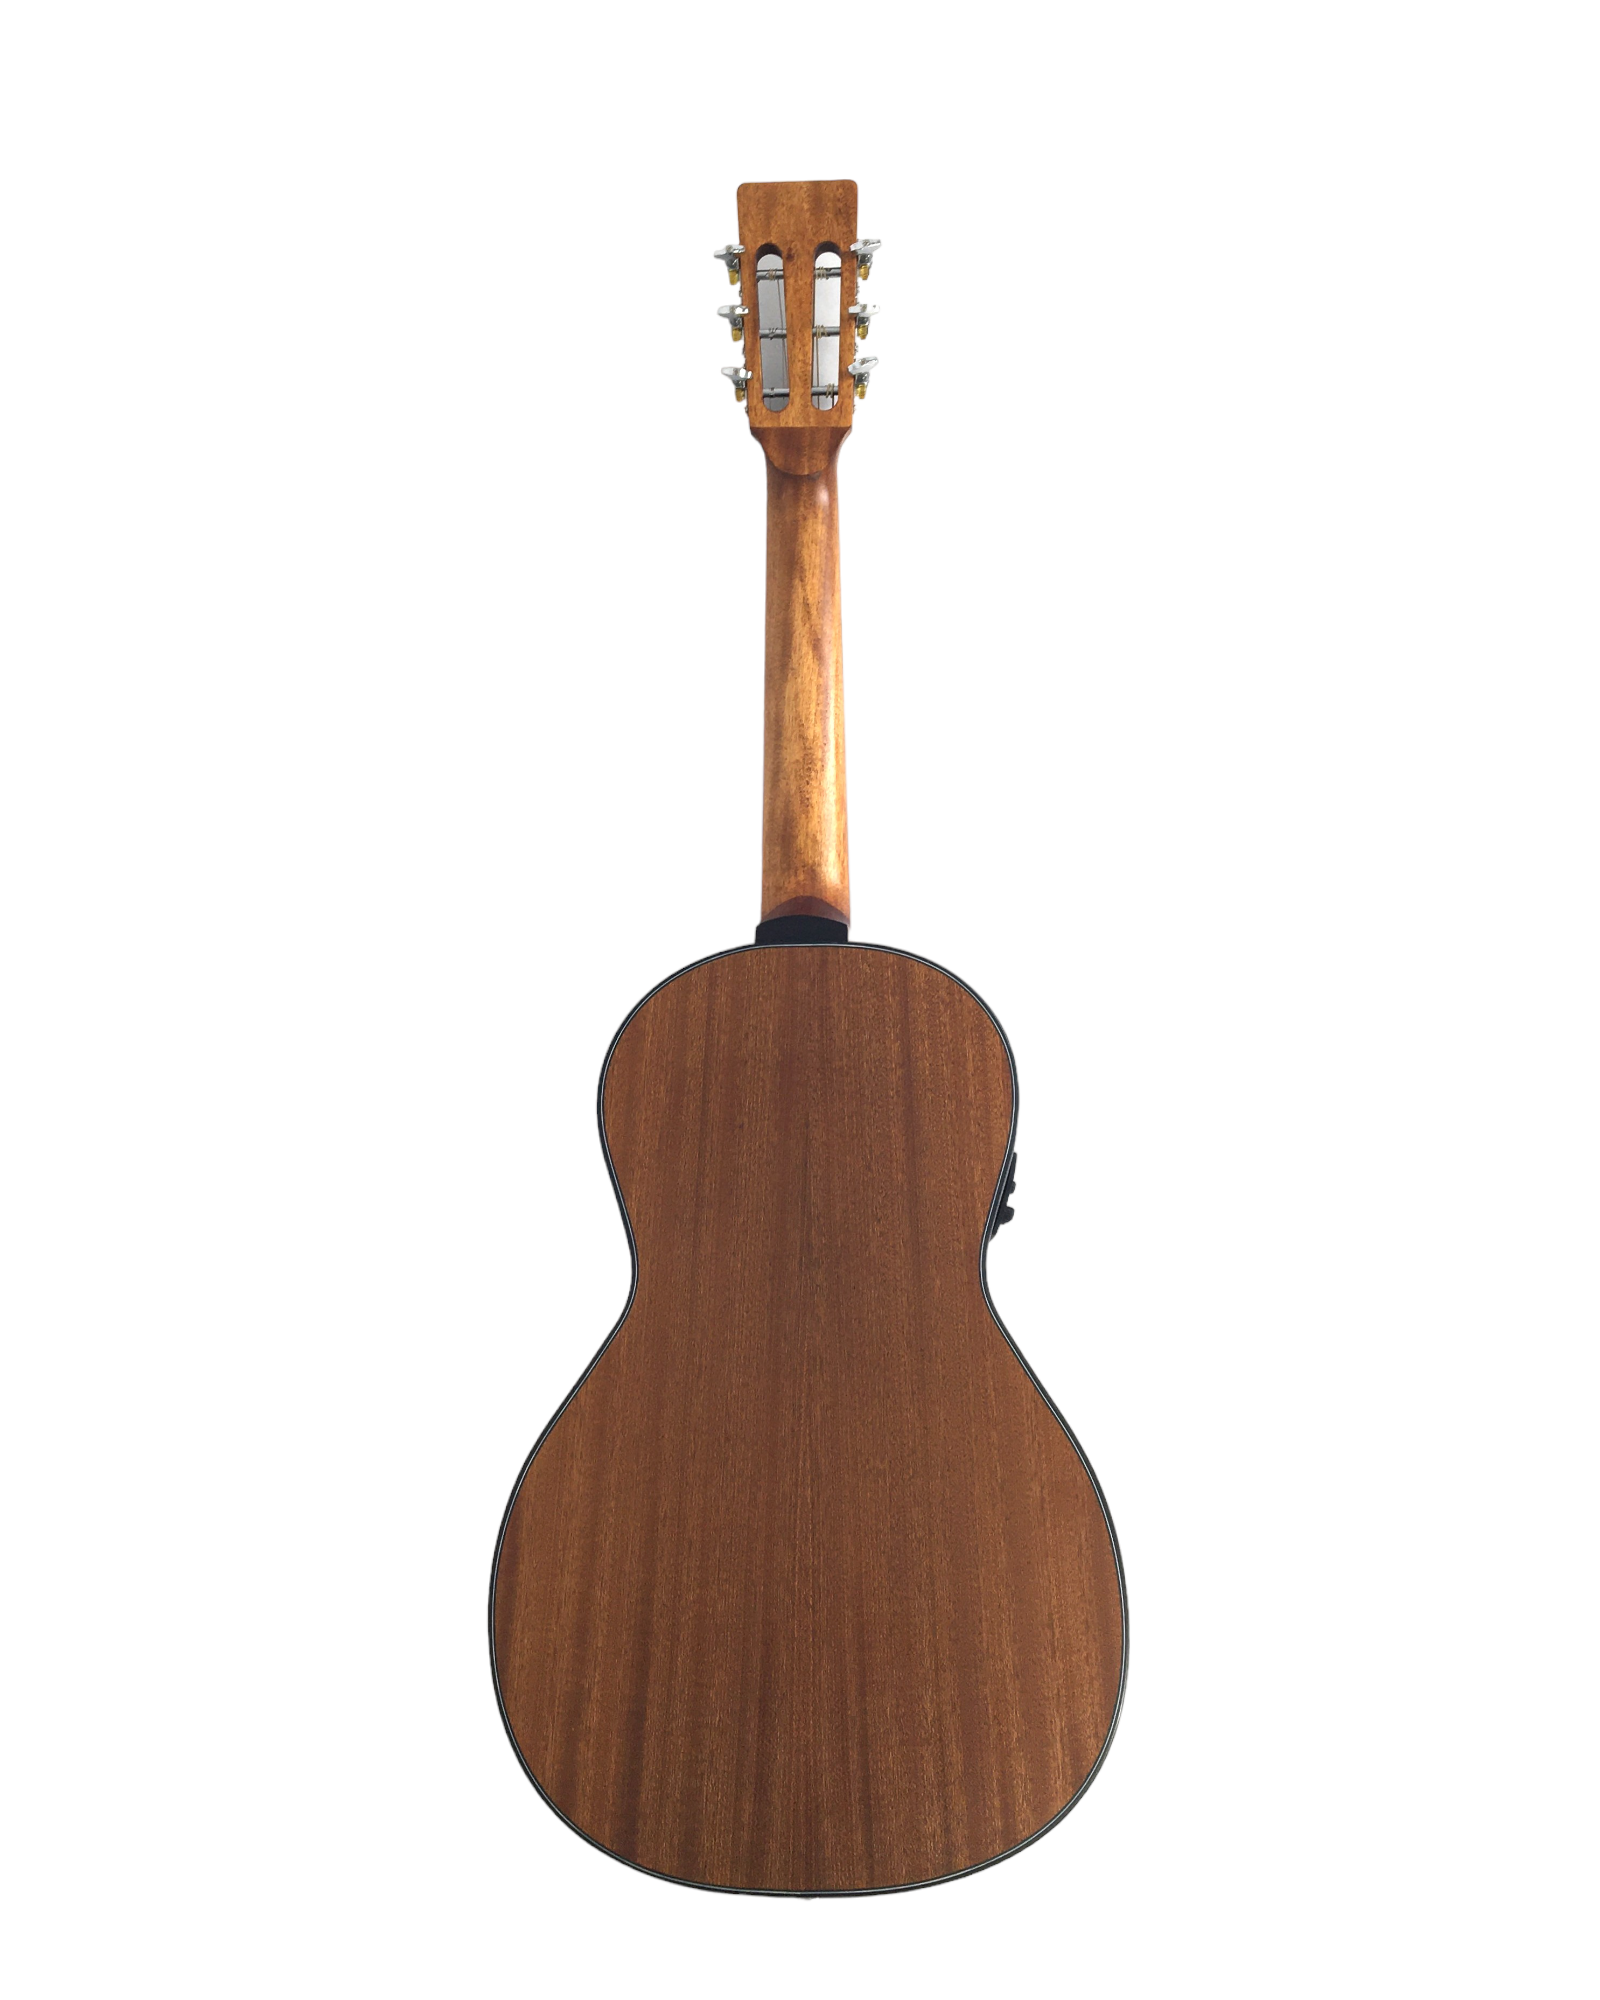 Caraya Parlor Cedar Top Built-In Pickups/Tuner Acoustic Guitar